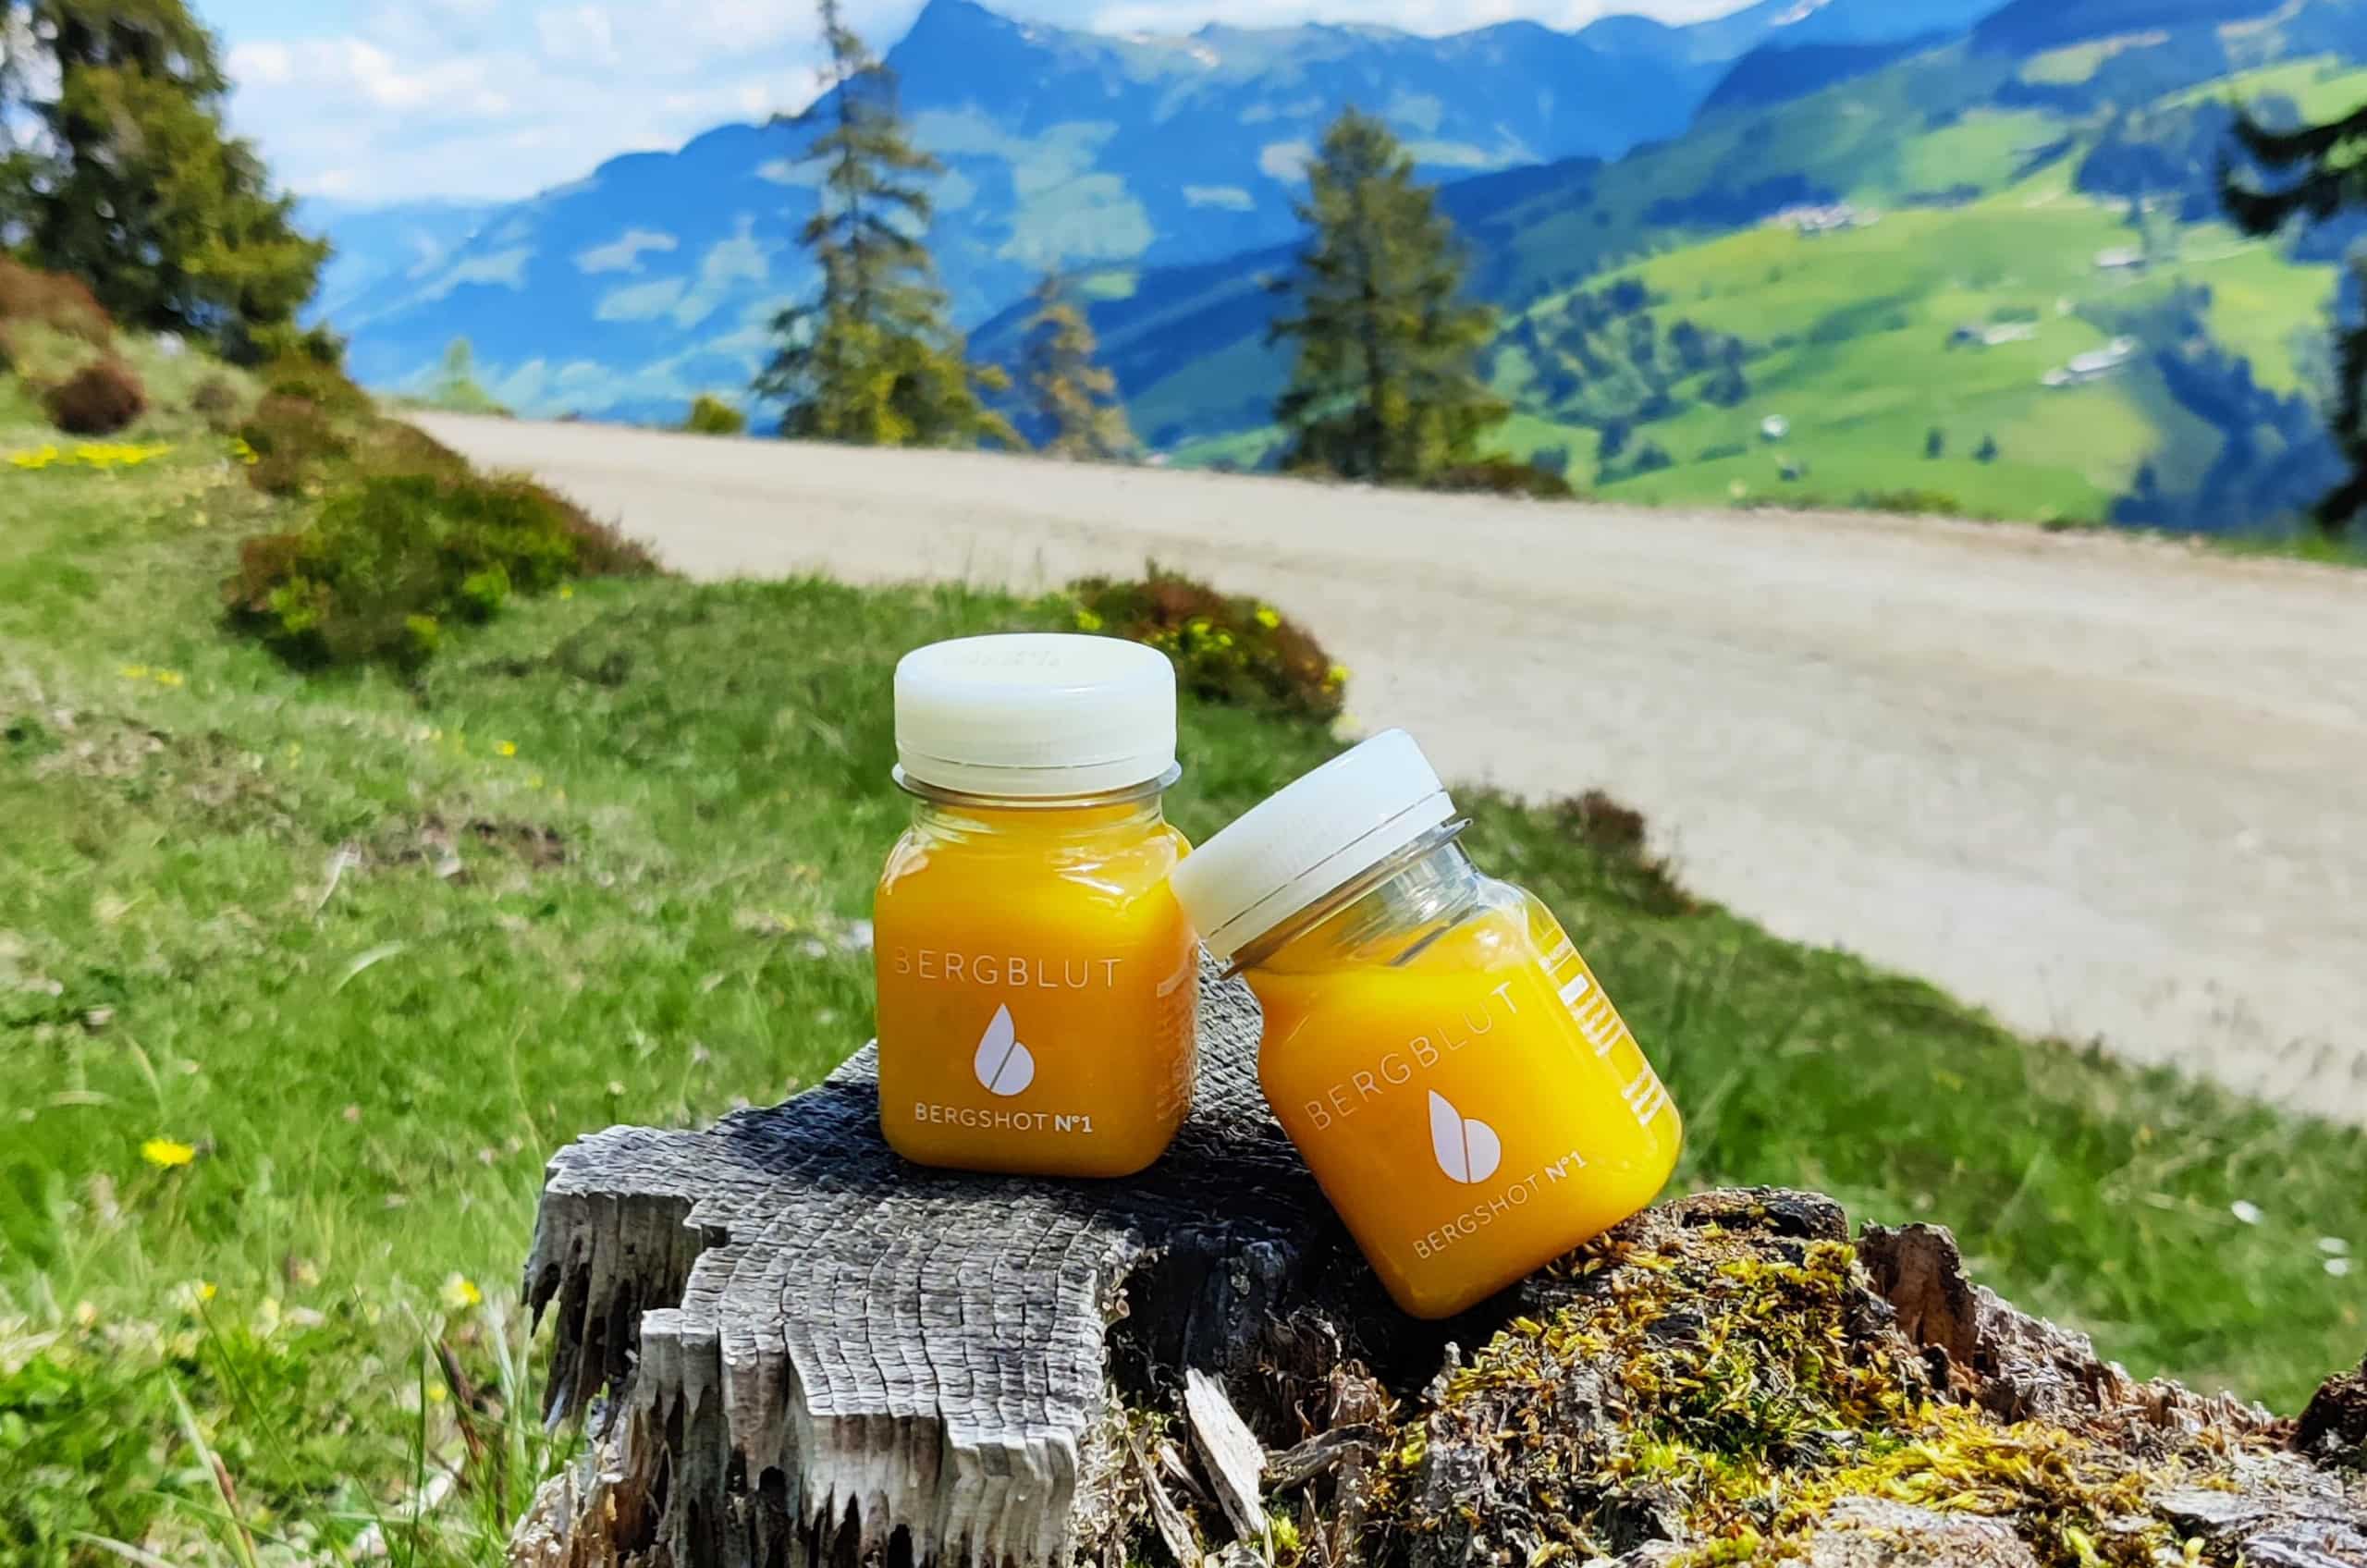 Zwei orangefarbene Säfte stehen auf einem Baumstumpf an einem Wanderweg in den Bergen. Nachhaltiges Marketing bei Bergblut.